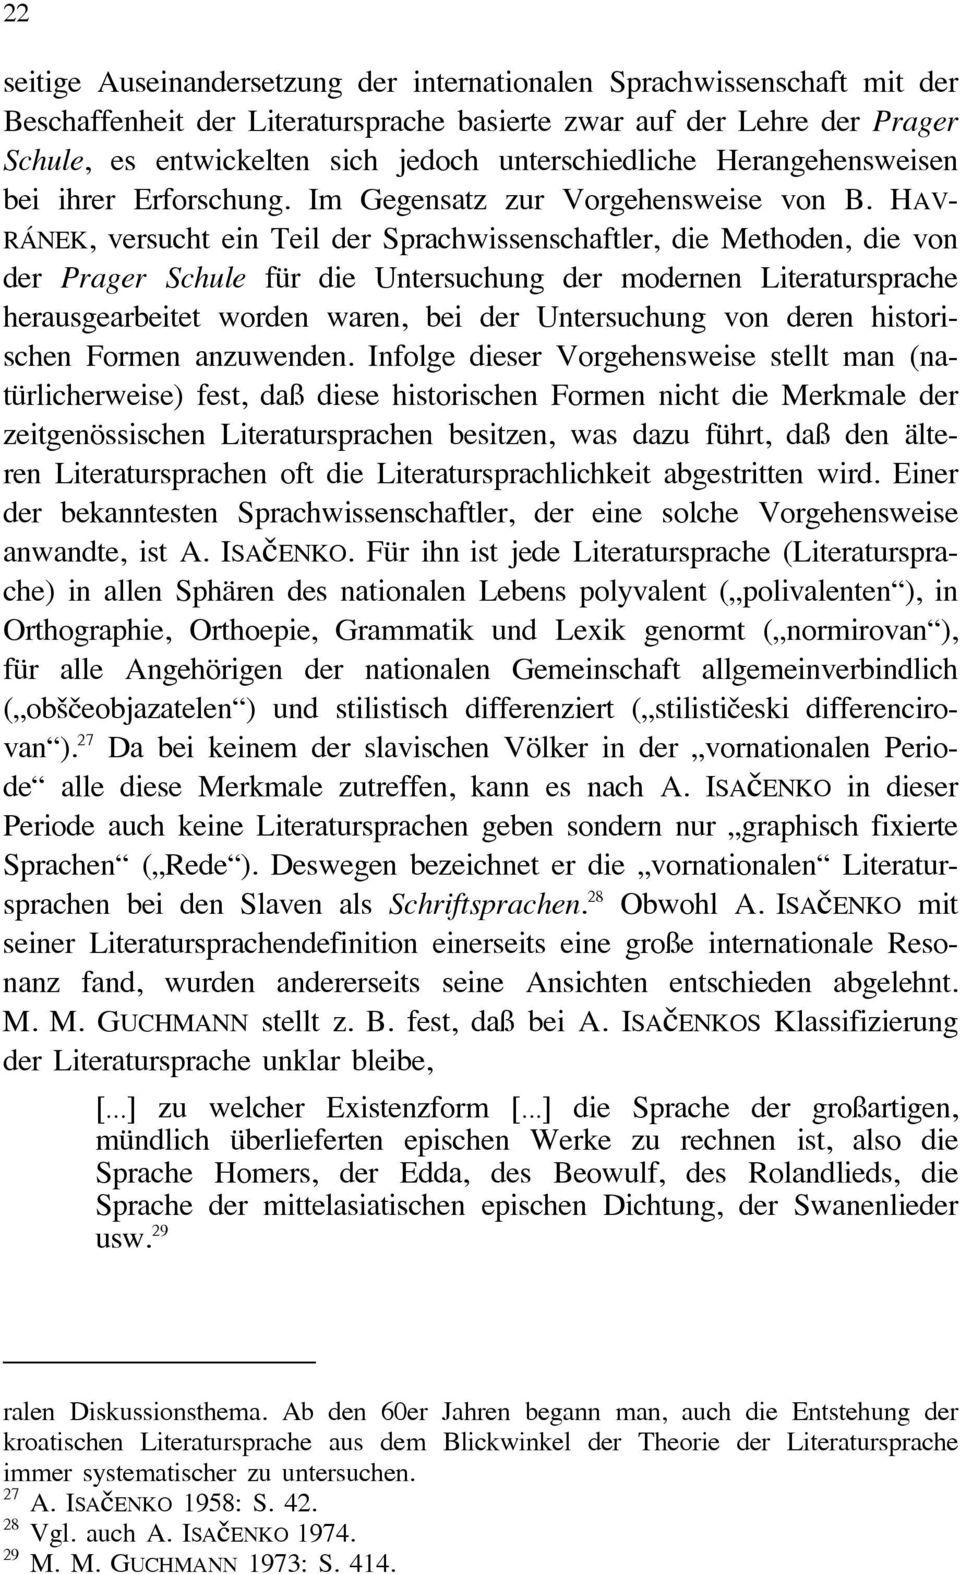 HAV- RÁNEK, versucht ein Teil der Sprachwissenschaftler, die Methoden, die von der Prager Schule für die Untersuchung der modernen Literatursprache herausgearbeitet worden waren, bei der Untersuchung